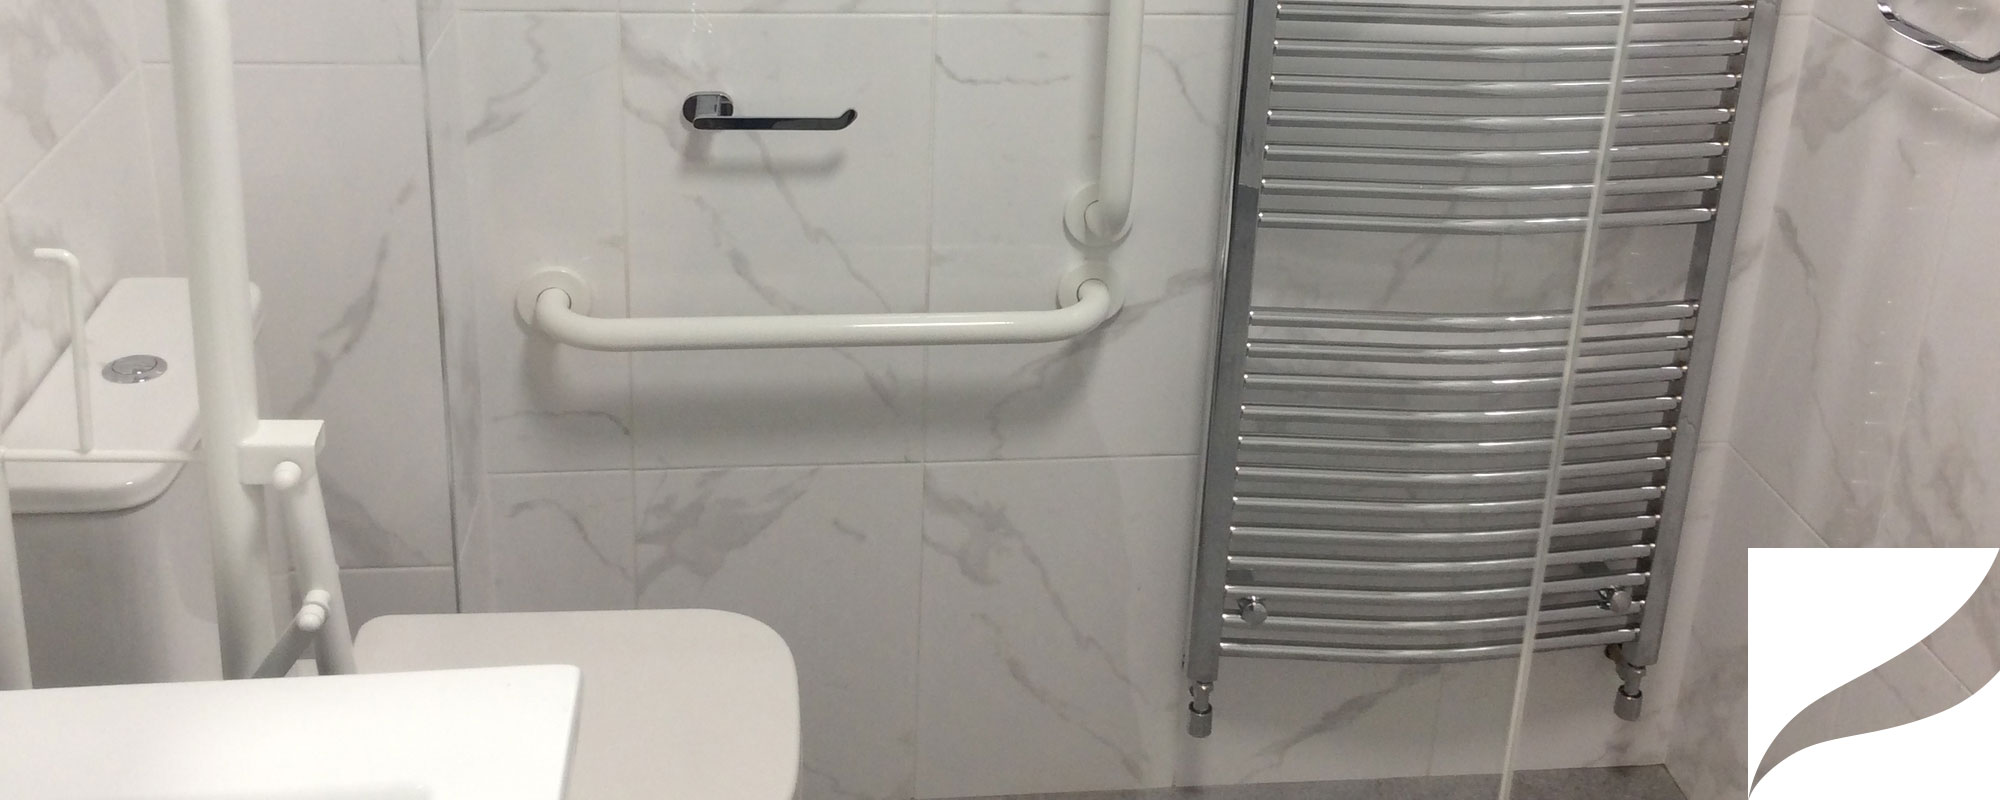 Kildare_Bathroom_21.jpg